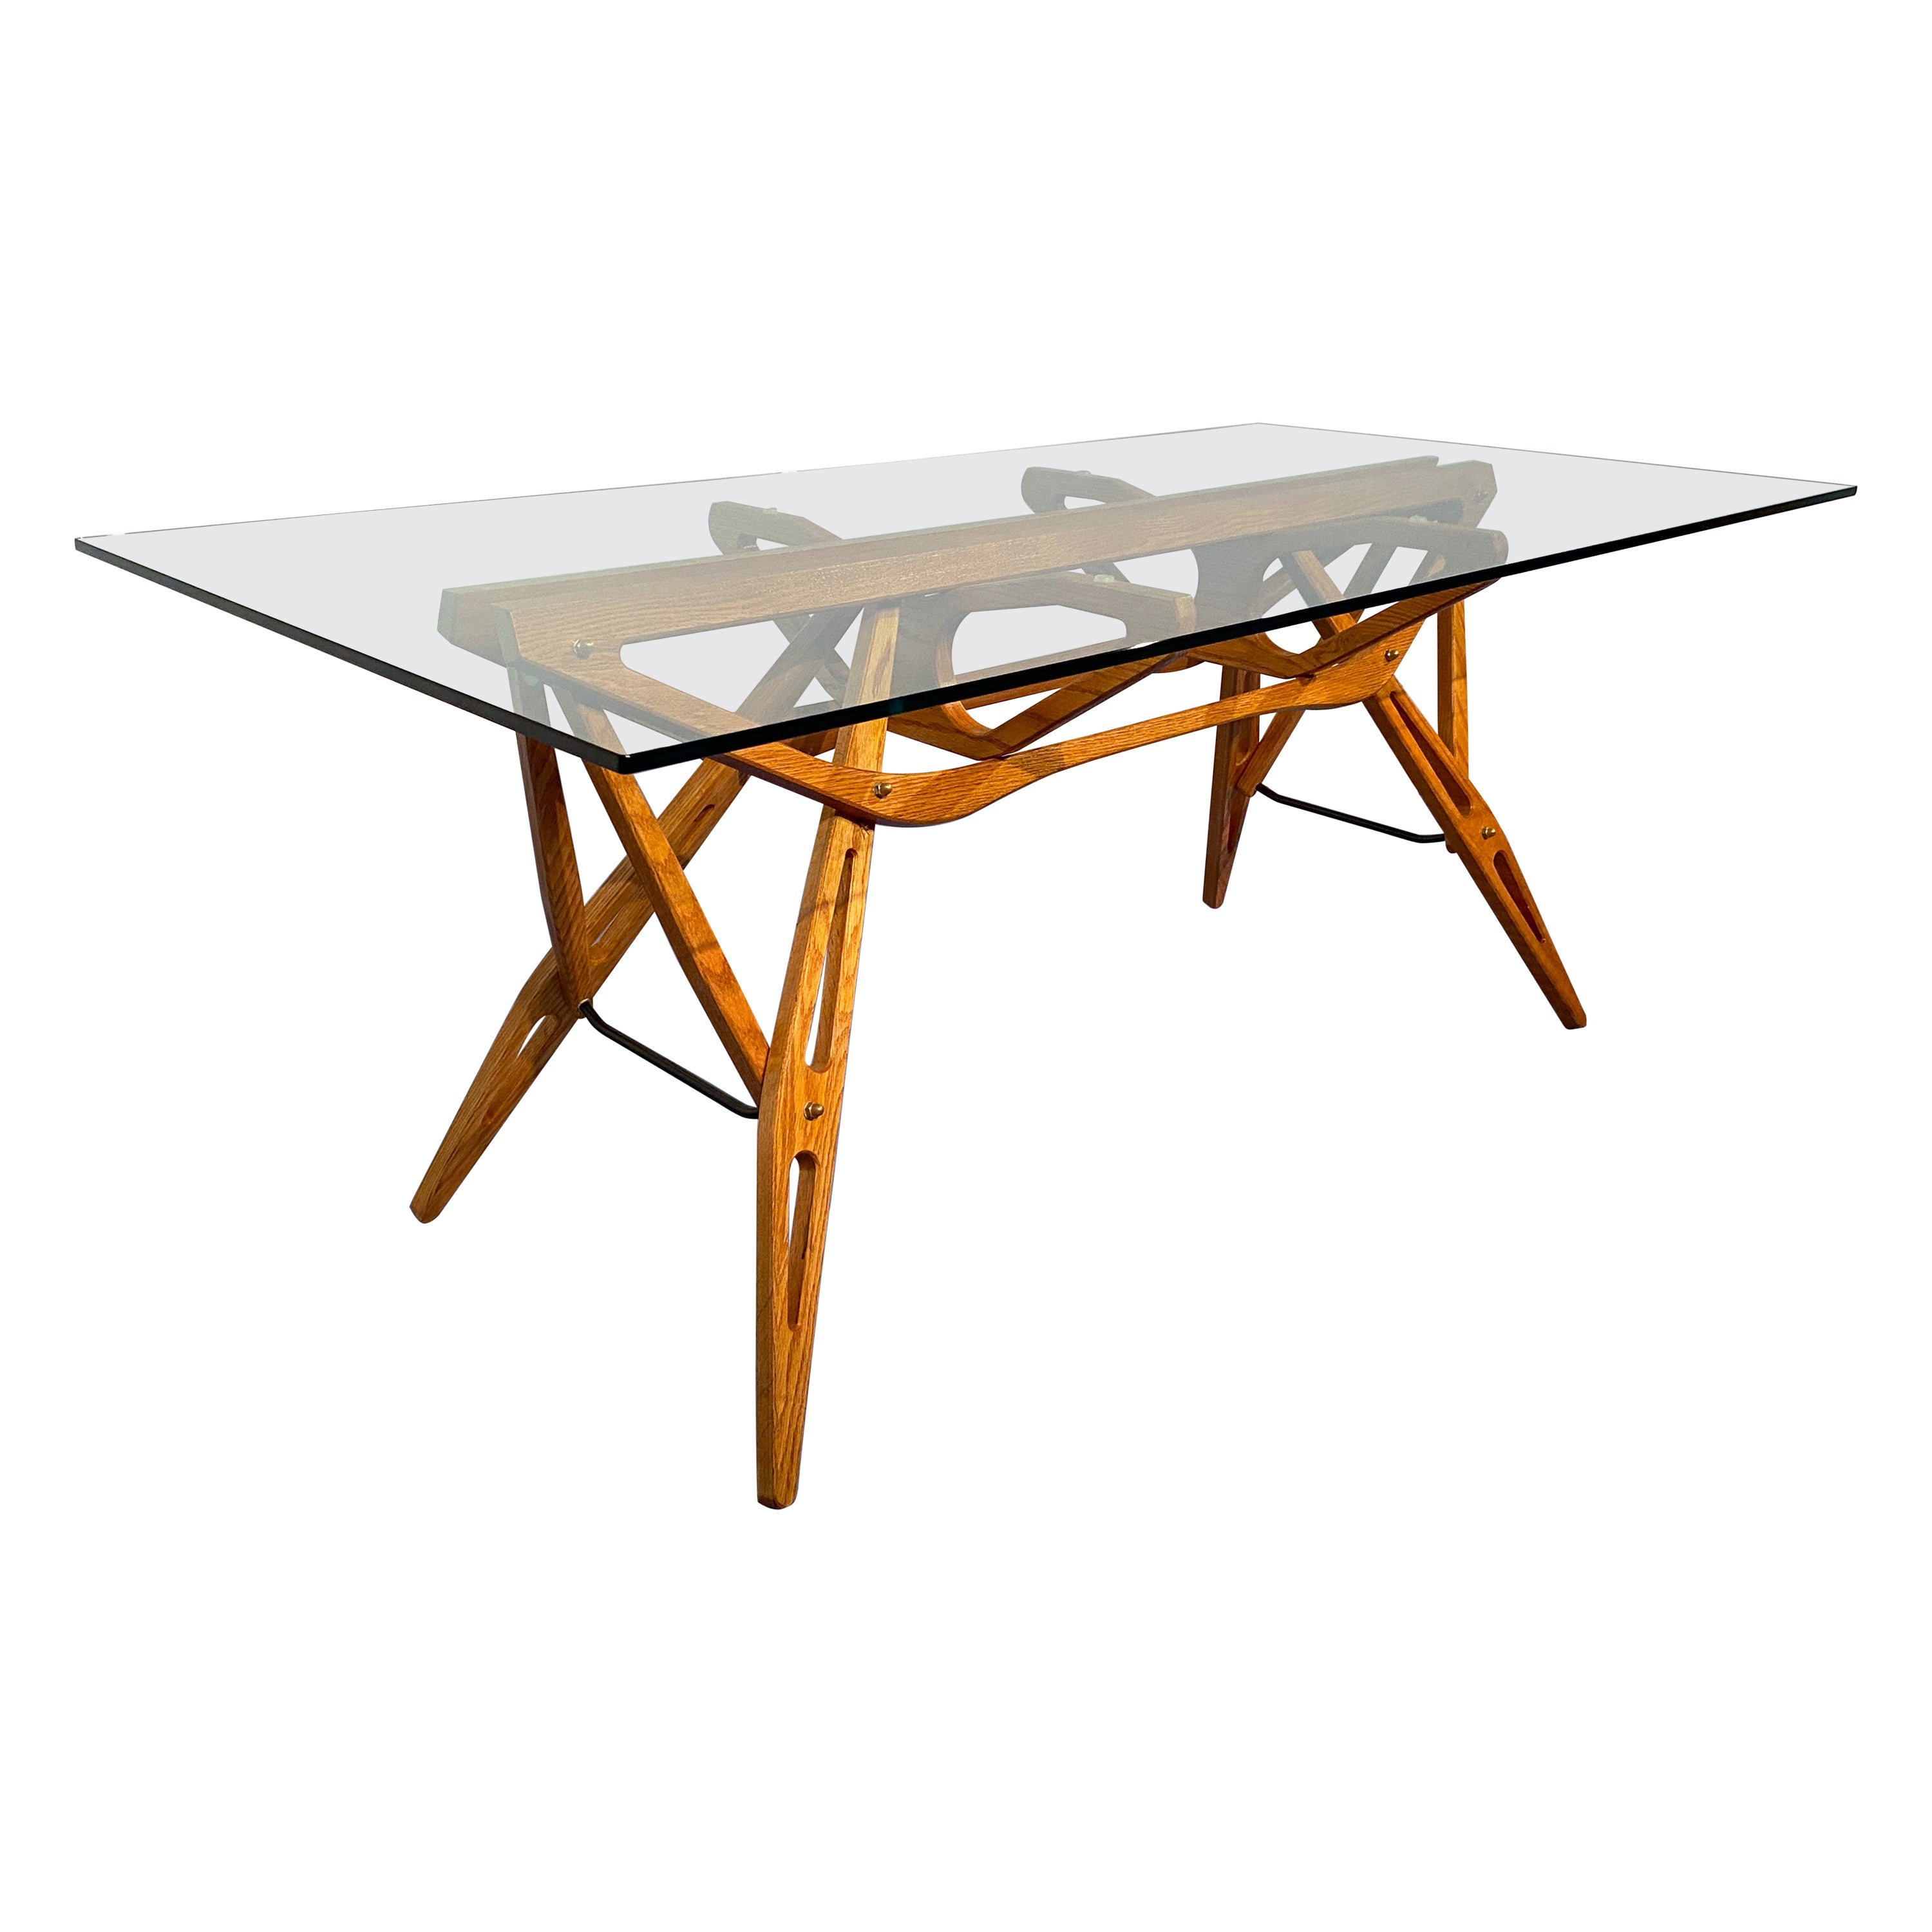 Italienischer „Reale“ Tisch, entworfen von Carlo Mollino, hergestellt von Zanotta, 1990